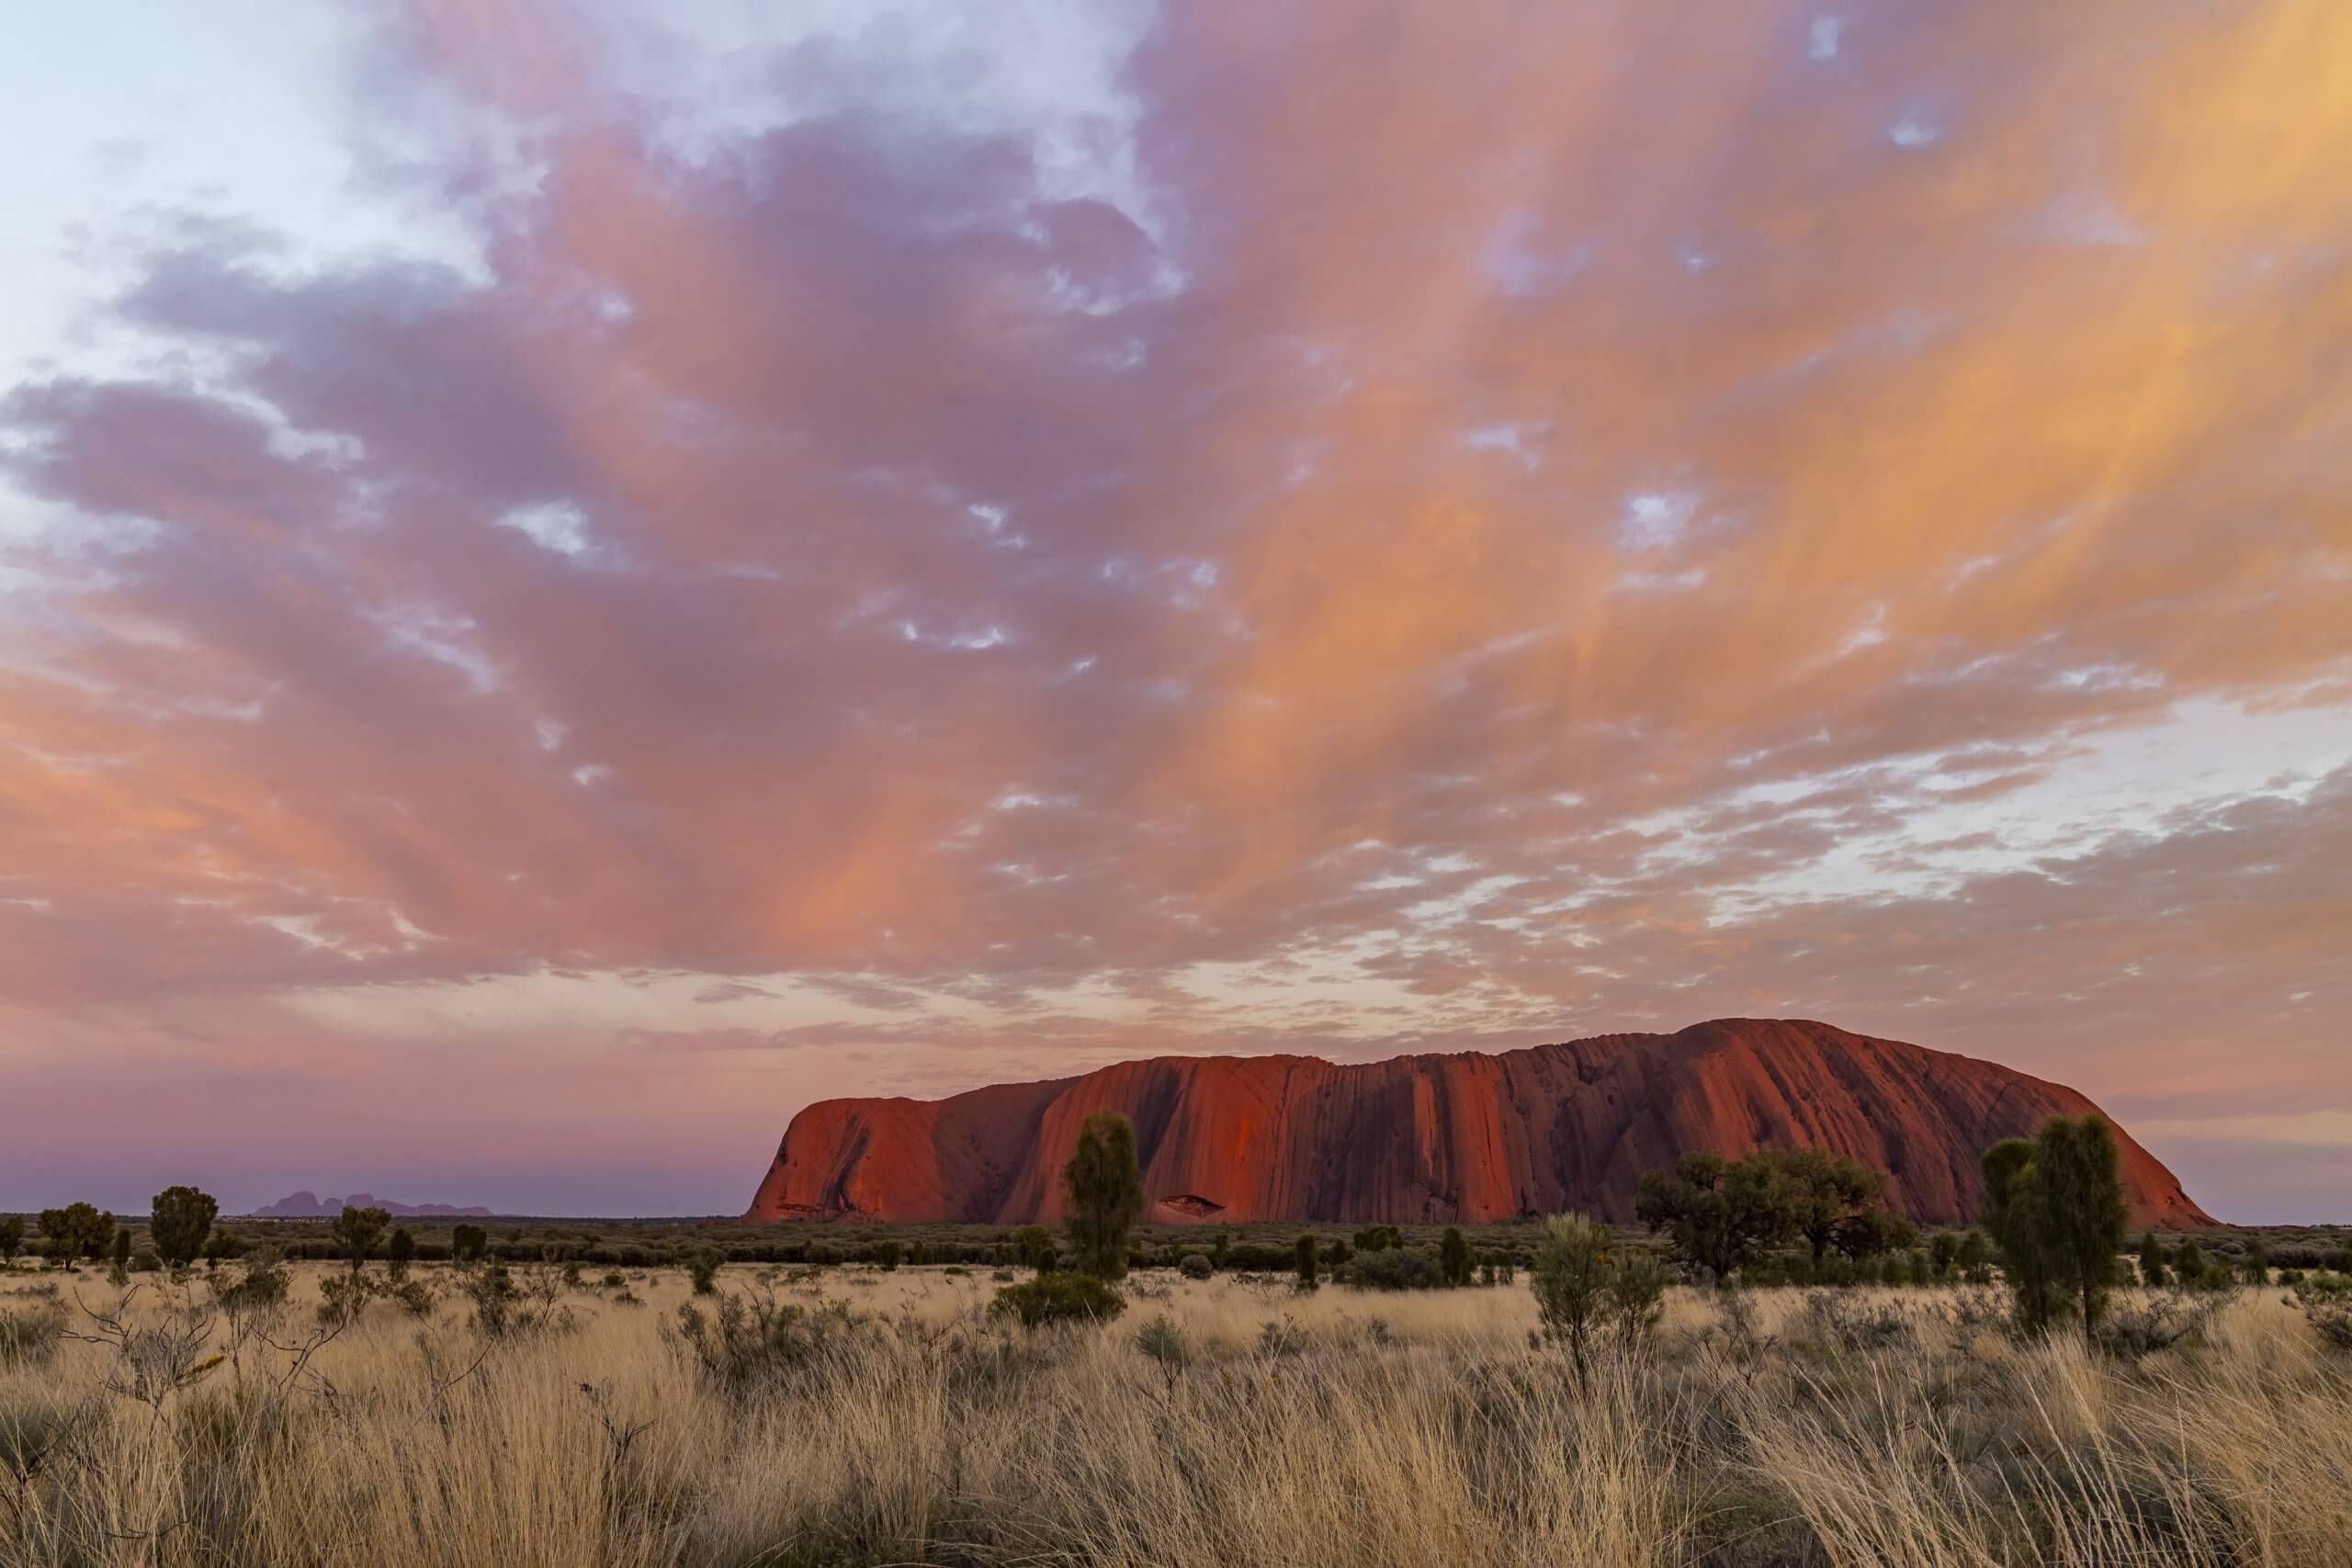 Sonnenaufgang am Uluru